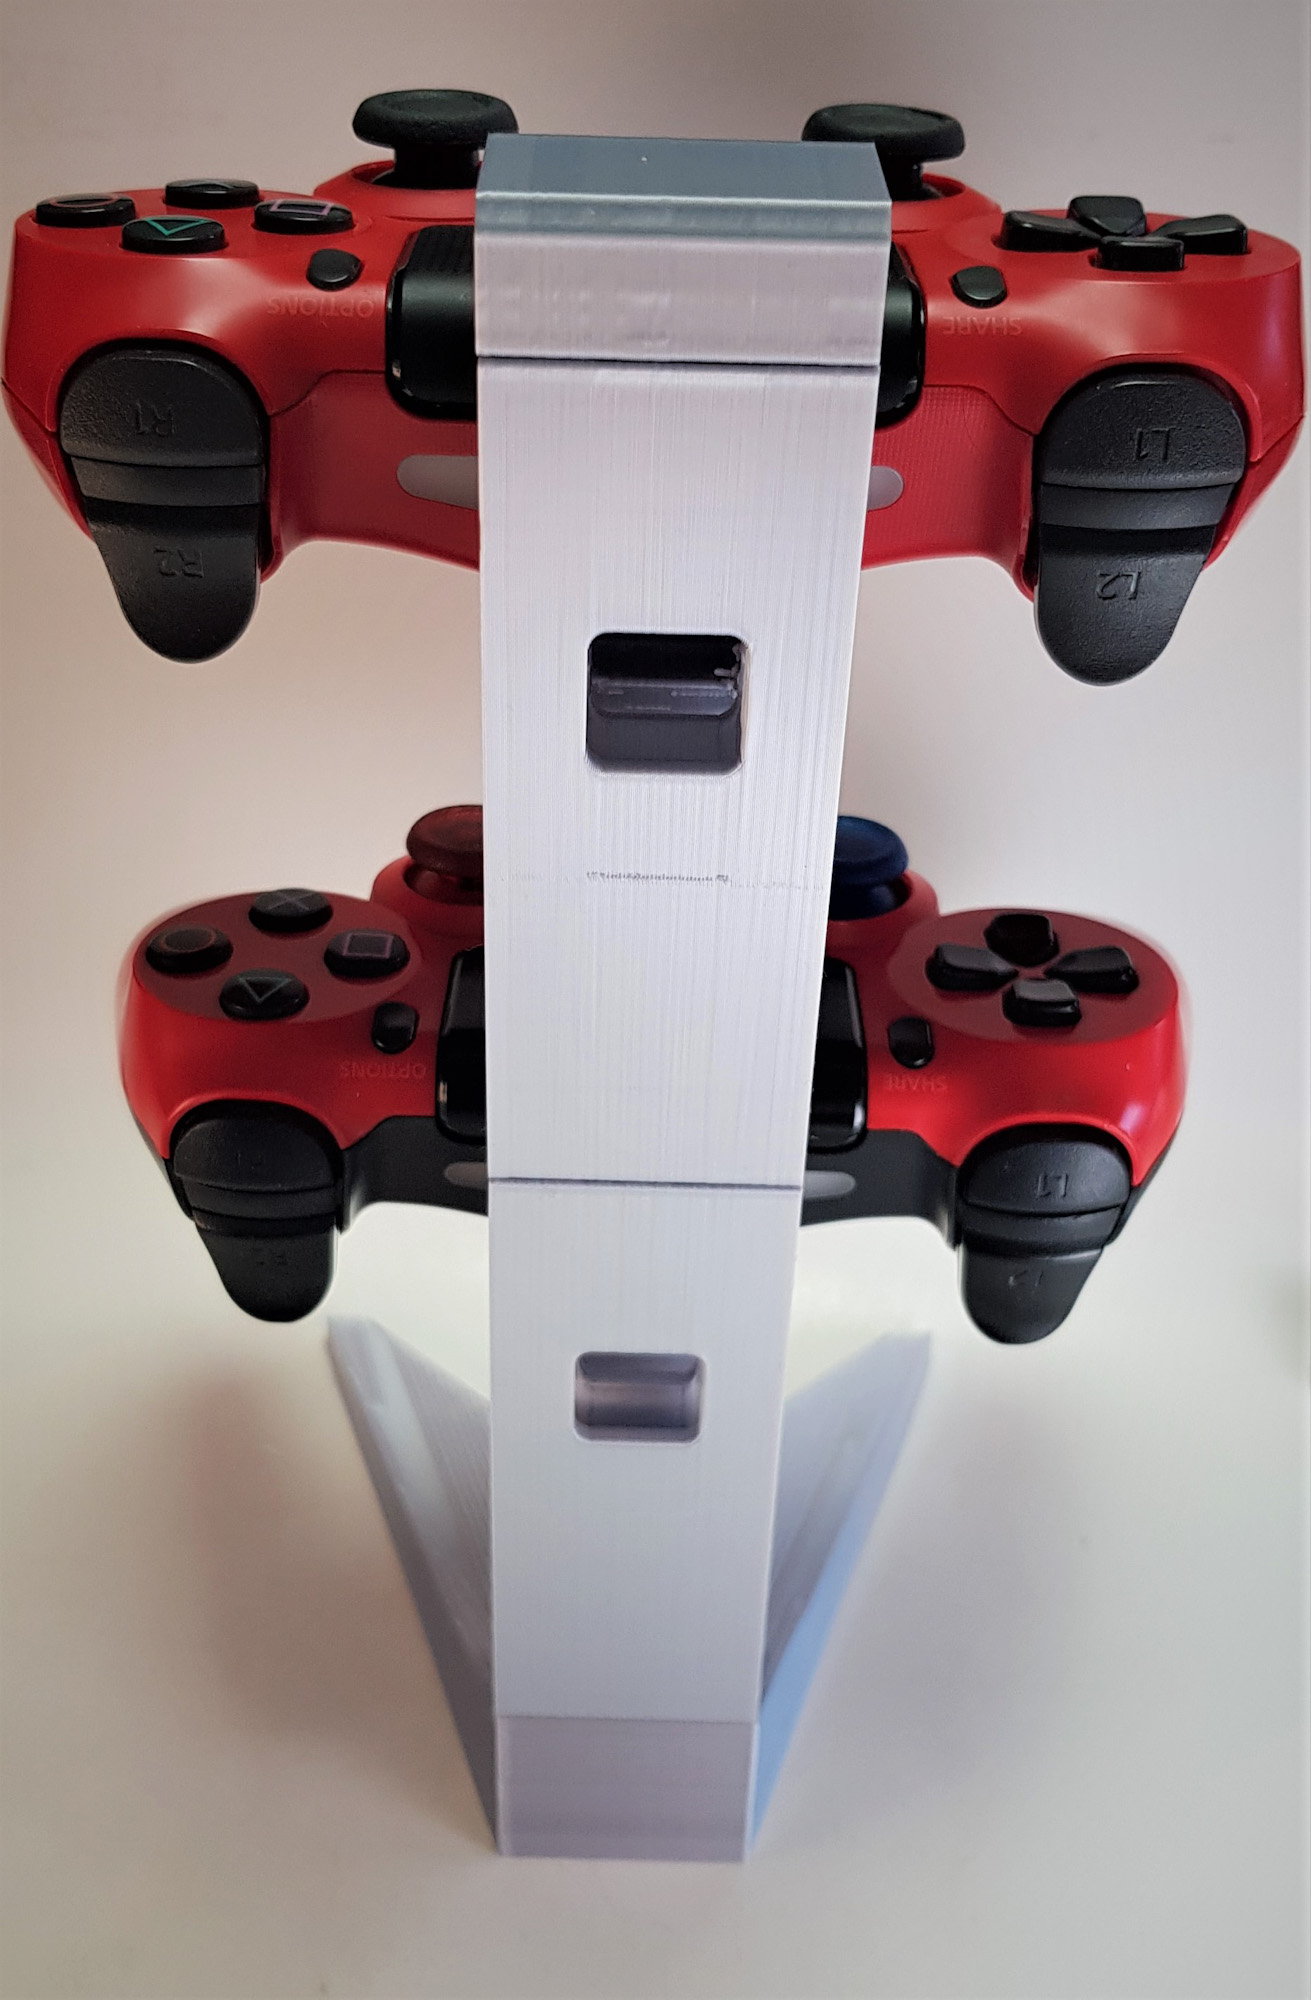 Suport montare 2 Controllere PS4 - 3D Print. Printeaza-ti proiectul 3d tau sau alege dintre proiectele special culese pentru tine.